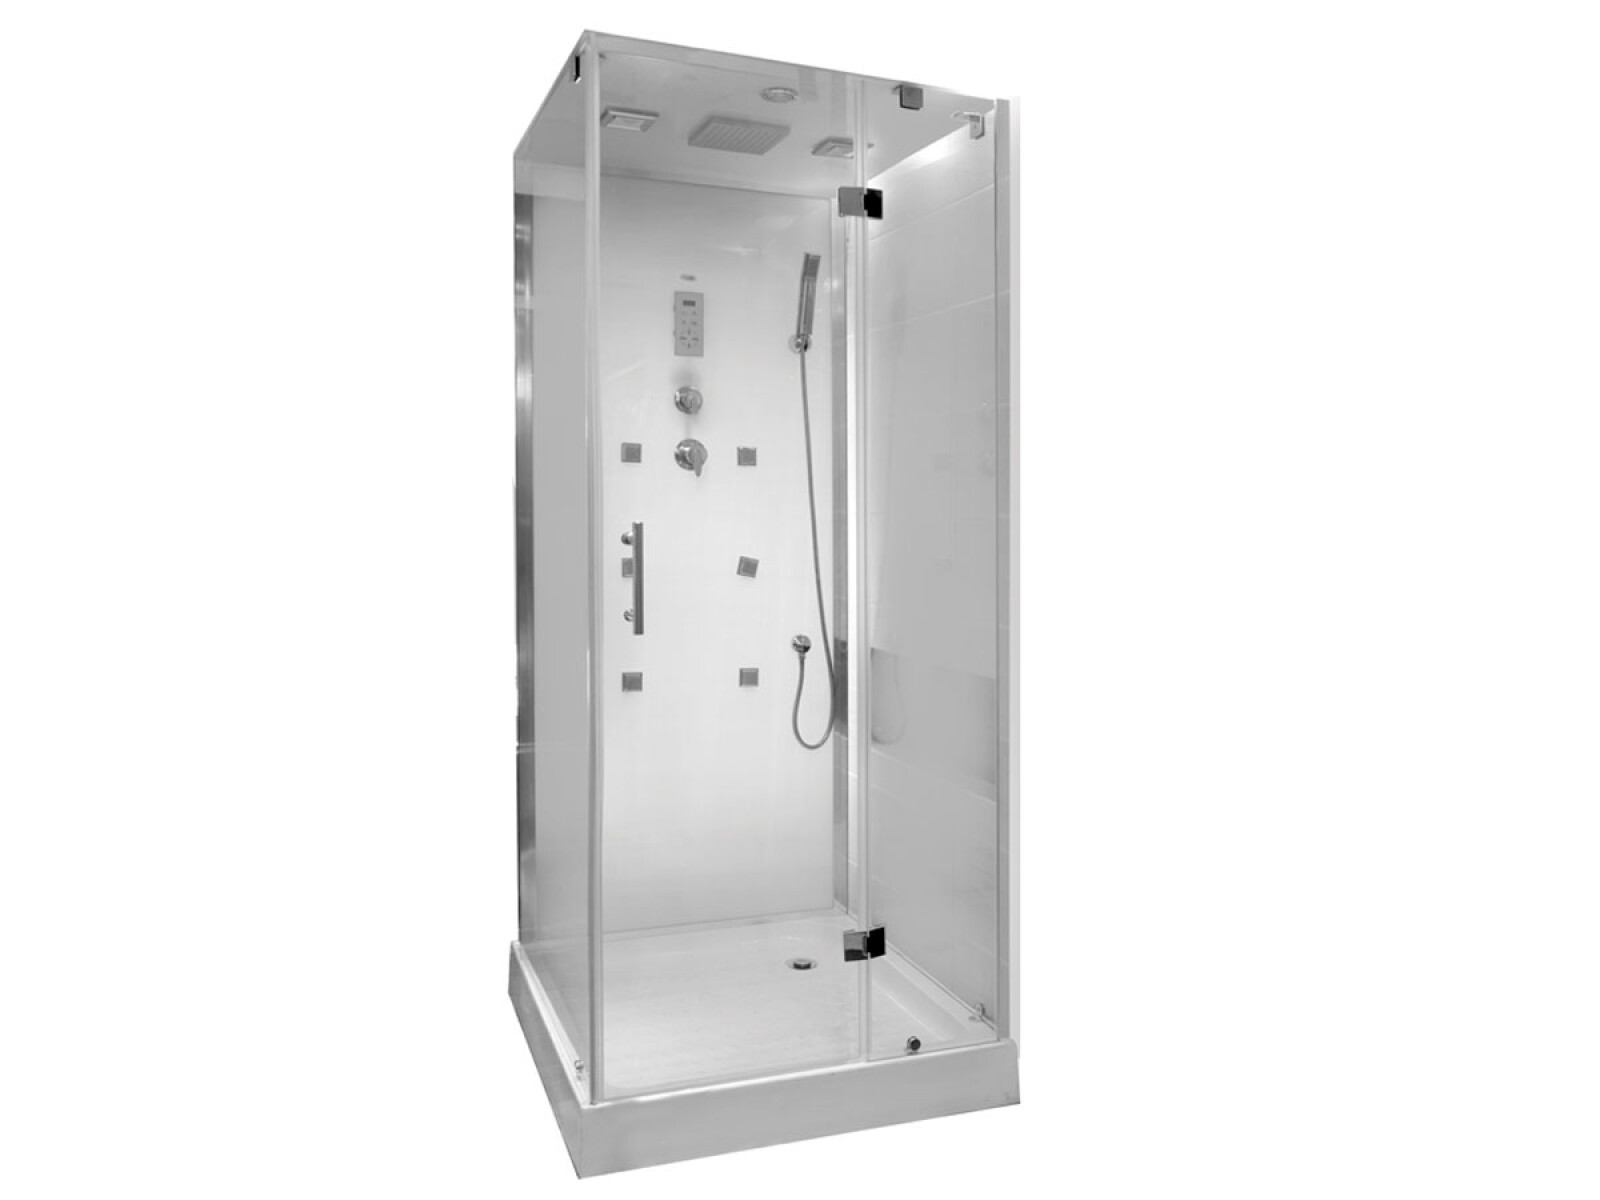 Cabina de ducha Aquasystem 90-90-223 cm hidromasaje - cabina de ducha de  diseño - muebles de baño